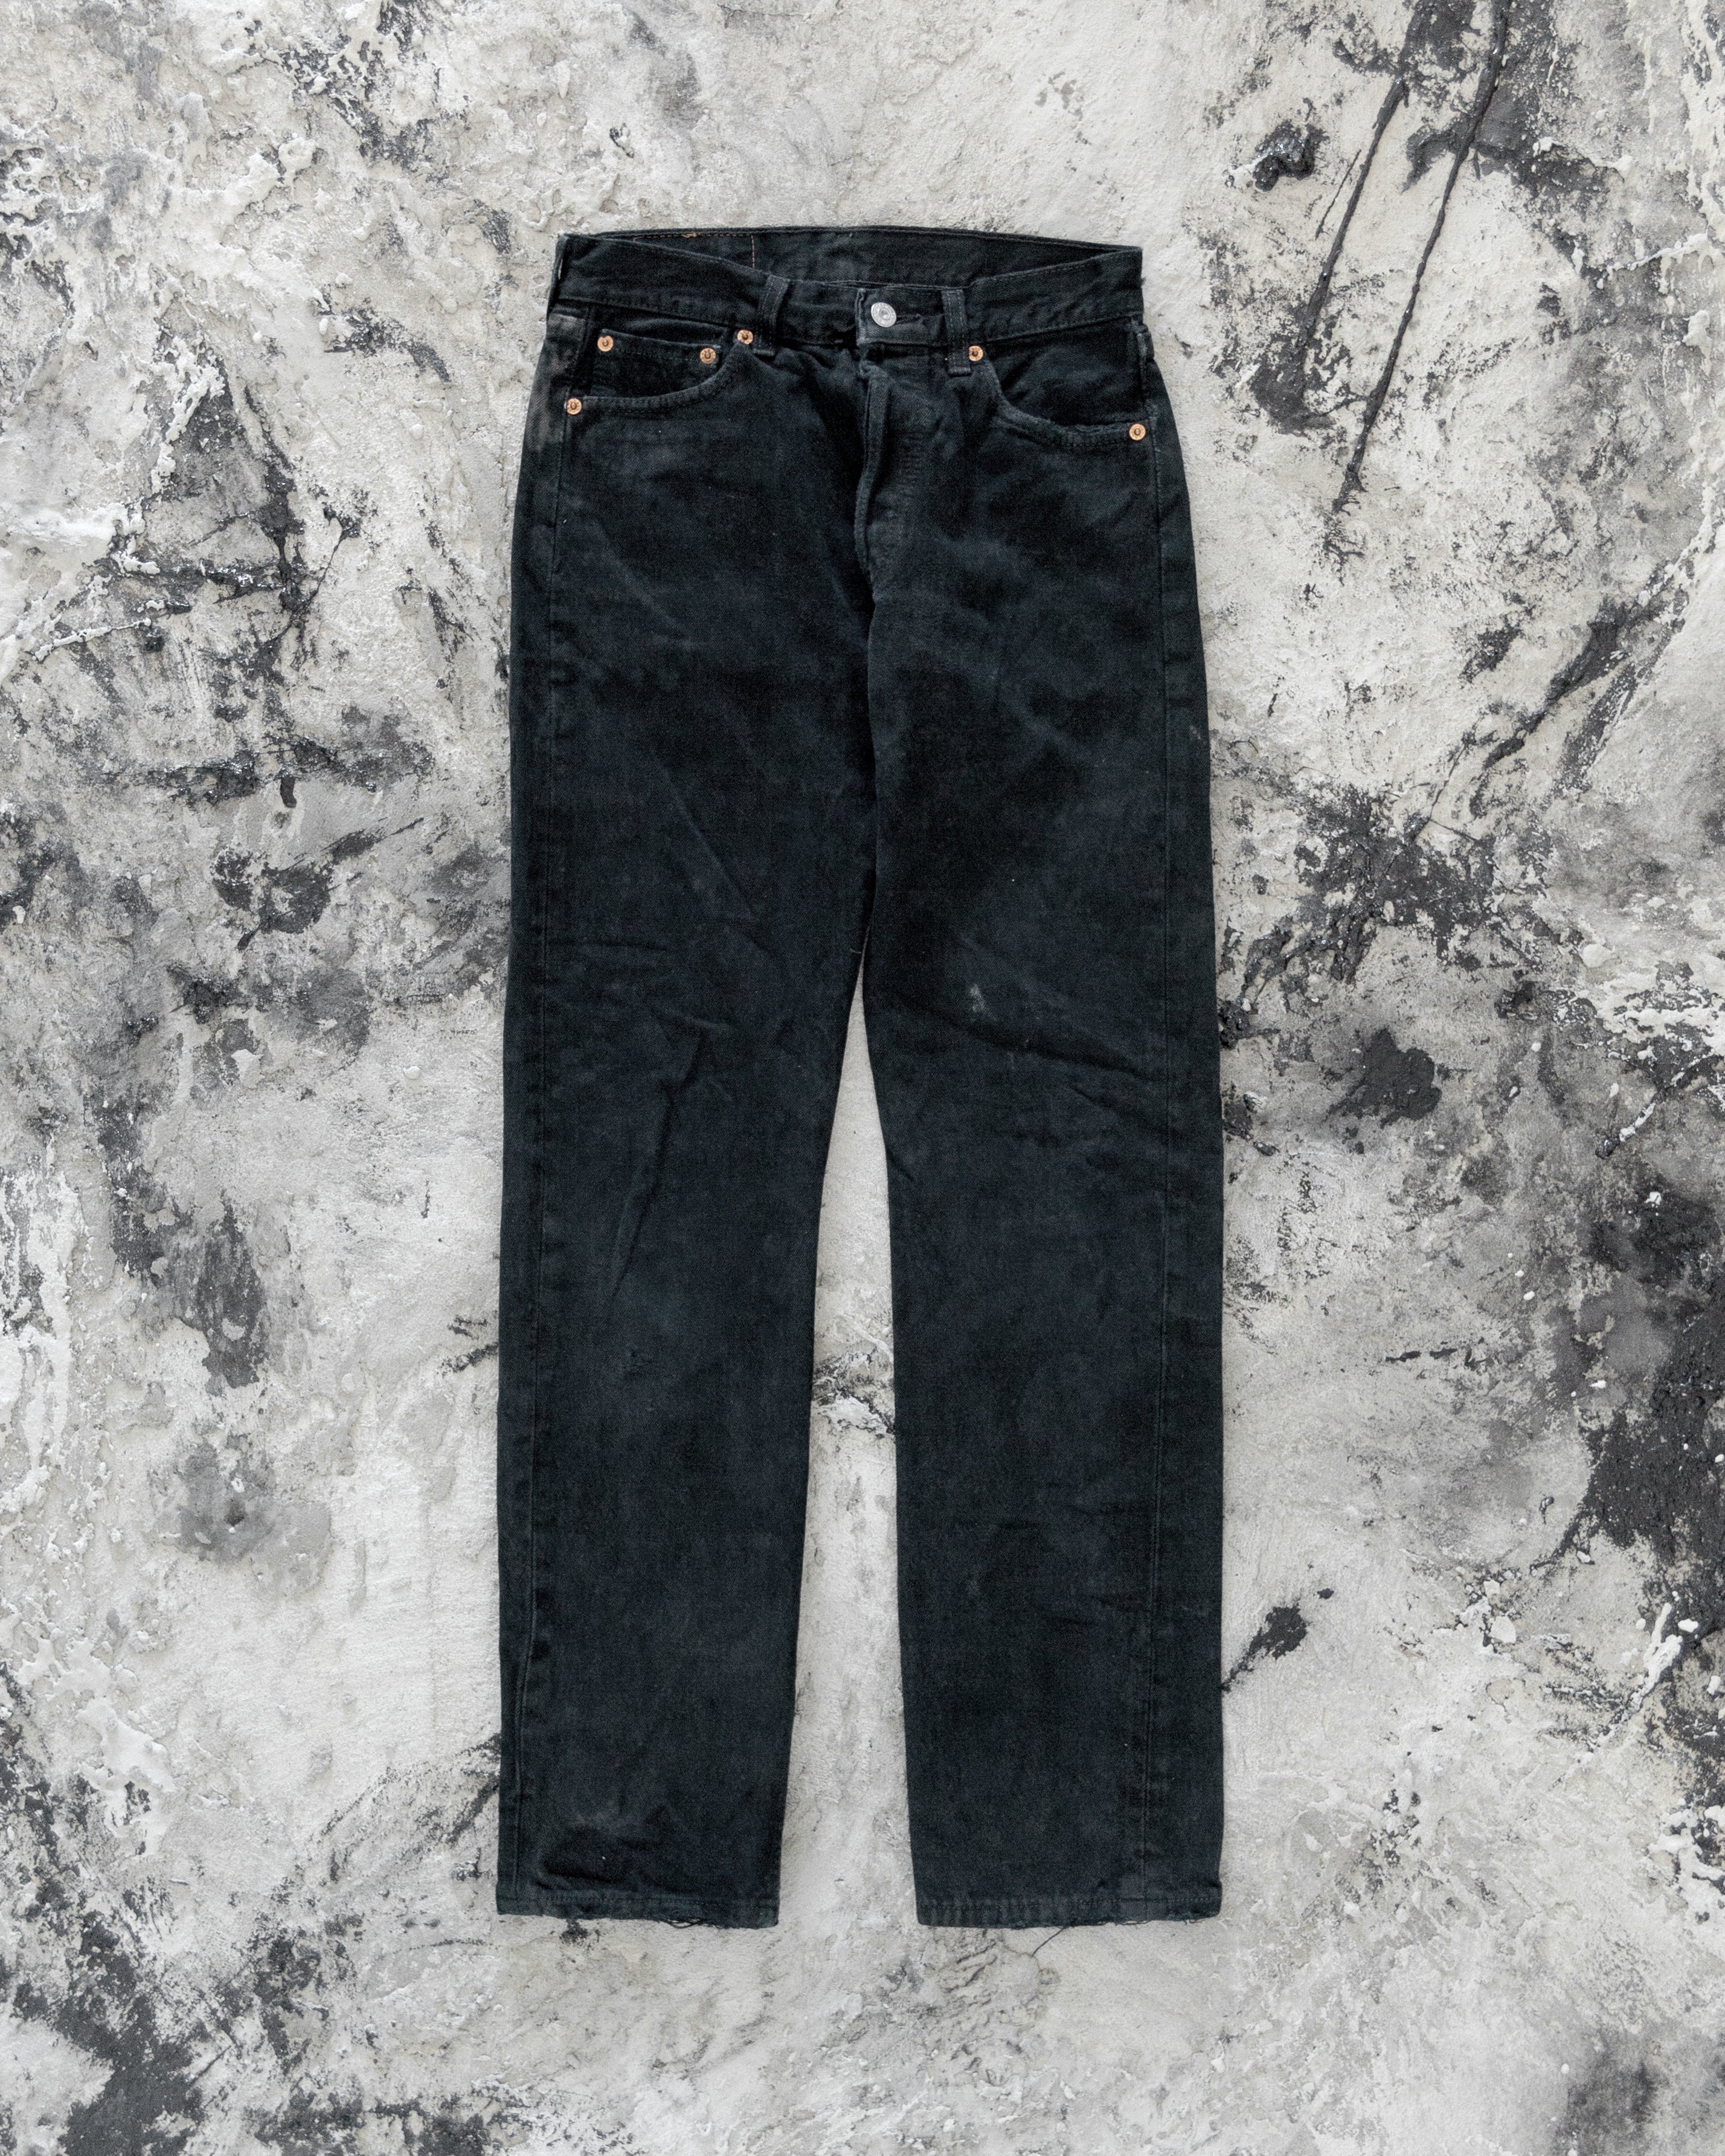 Levi's 501 Black Crotch Blowout Jeans - 1990s – UNSOUND RAGS